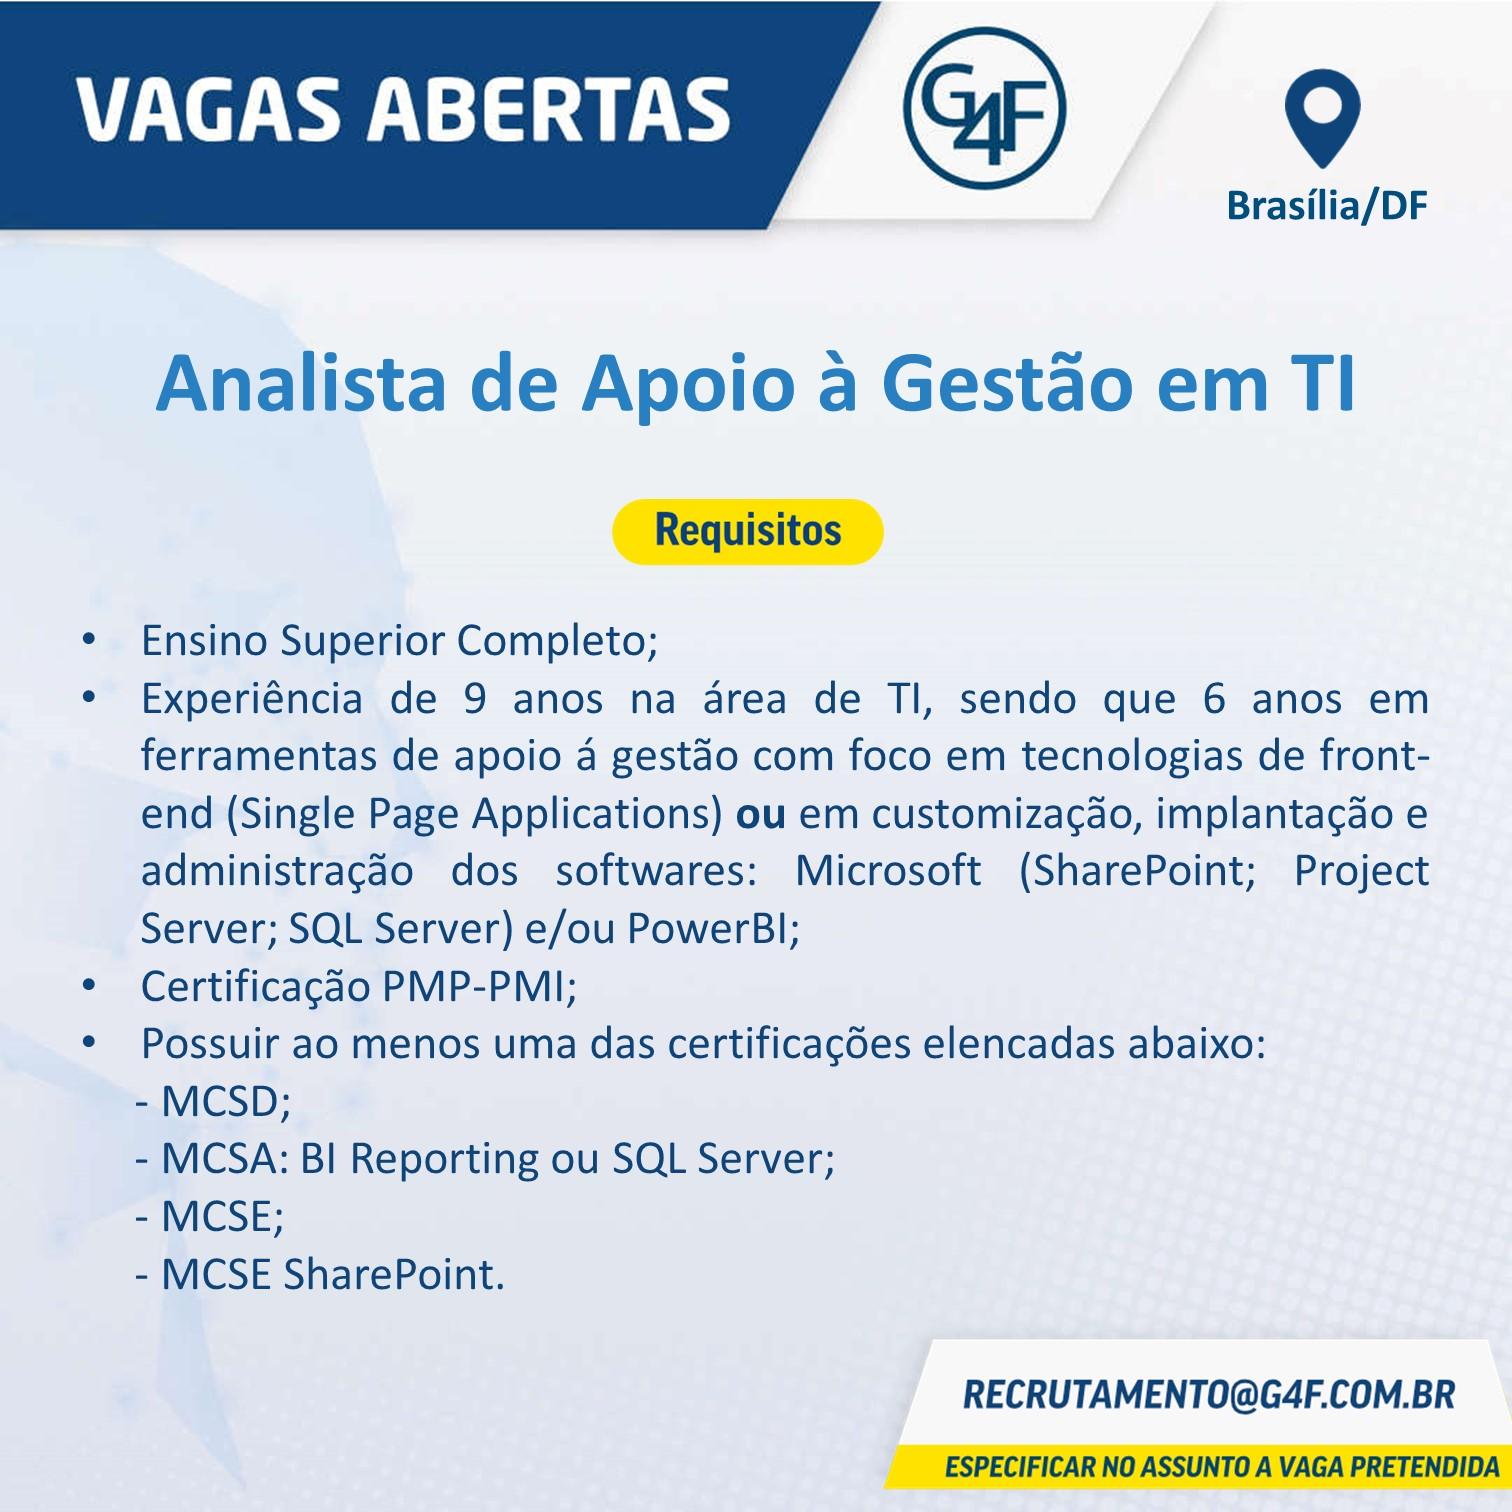 [leonardoti] G4F divulga: Analista de Apoio à Gestão em TI. Brasília/DF.